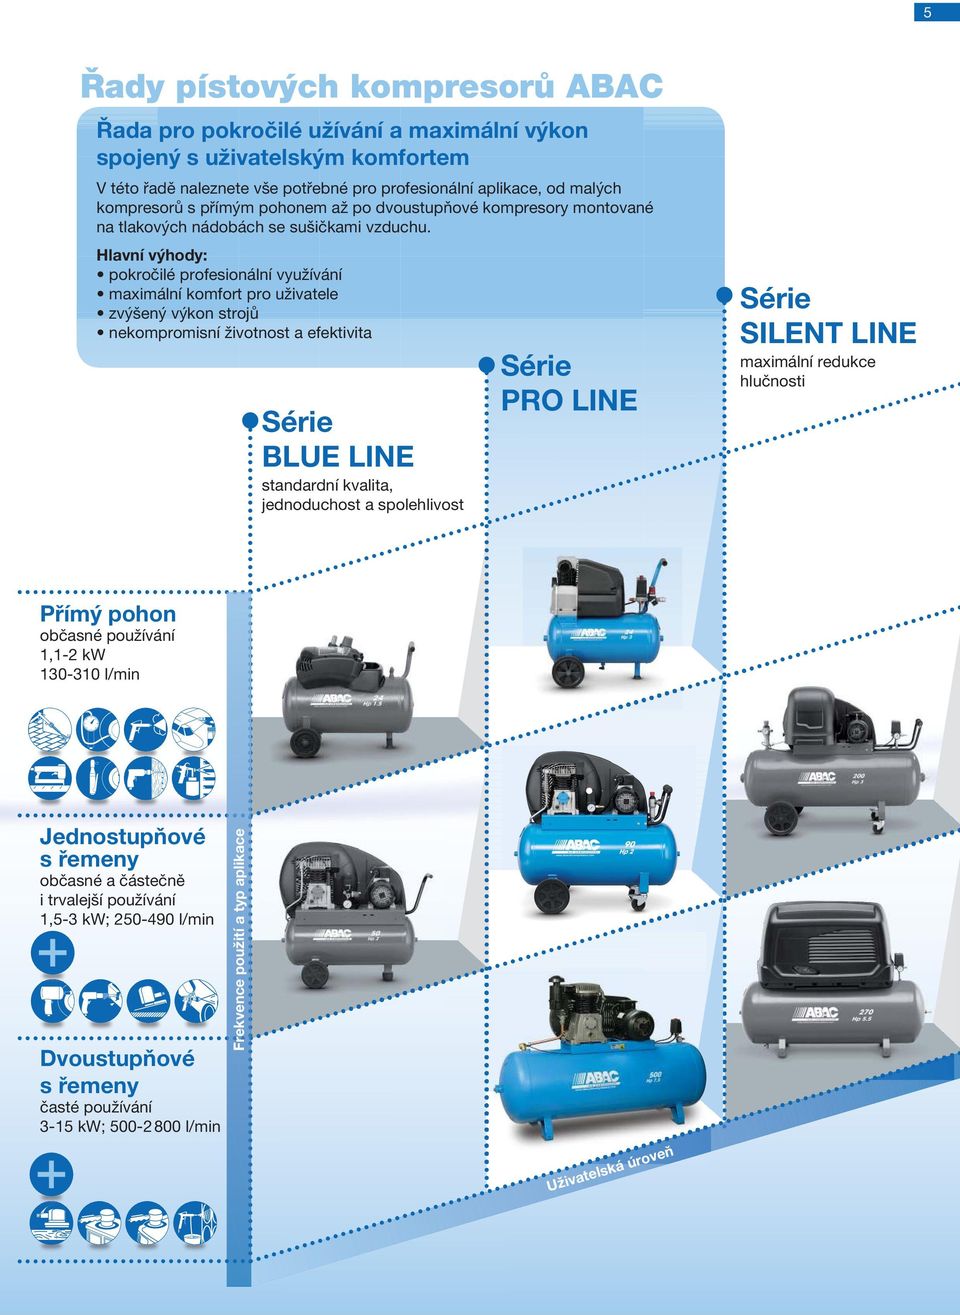 Hlavní výhody: Série BLUE LINE standardní kvalita, jednoduchost a spolehlivost Série PRO LINE Série SILENT LINE maximální redukce hlučnosti Přímý pohon občasné používání